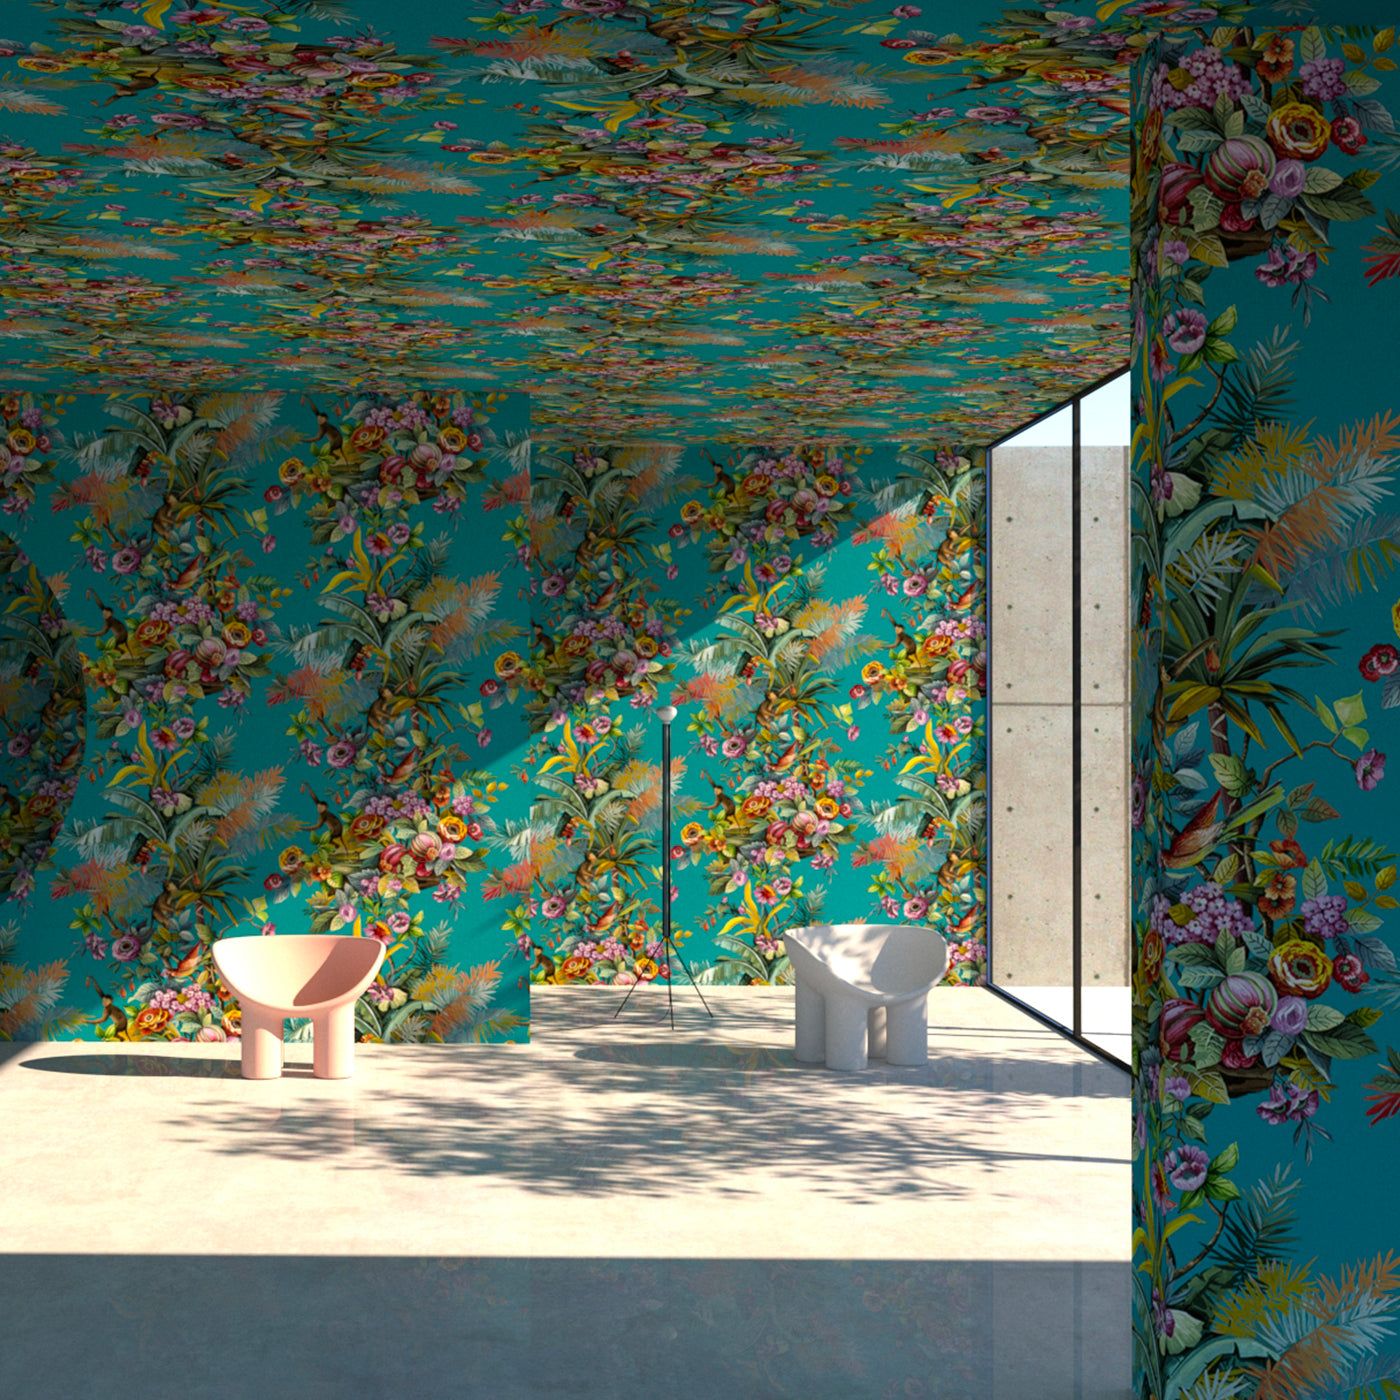 Exotic Jungle Turquoise Simone Guidarelli’s Les Jardins Imaginaires - Alternative view 1